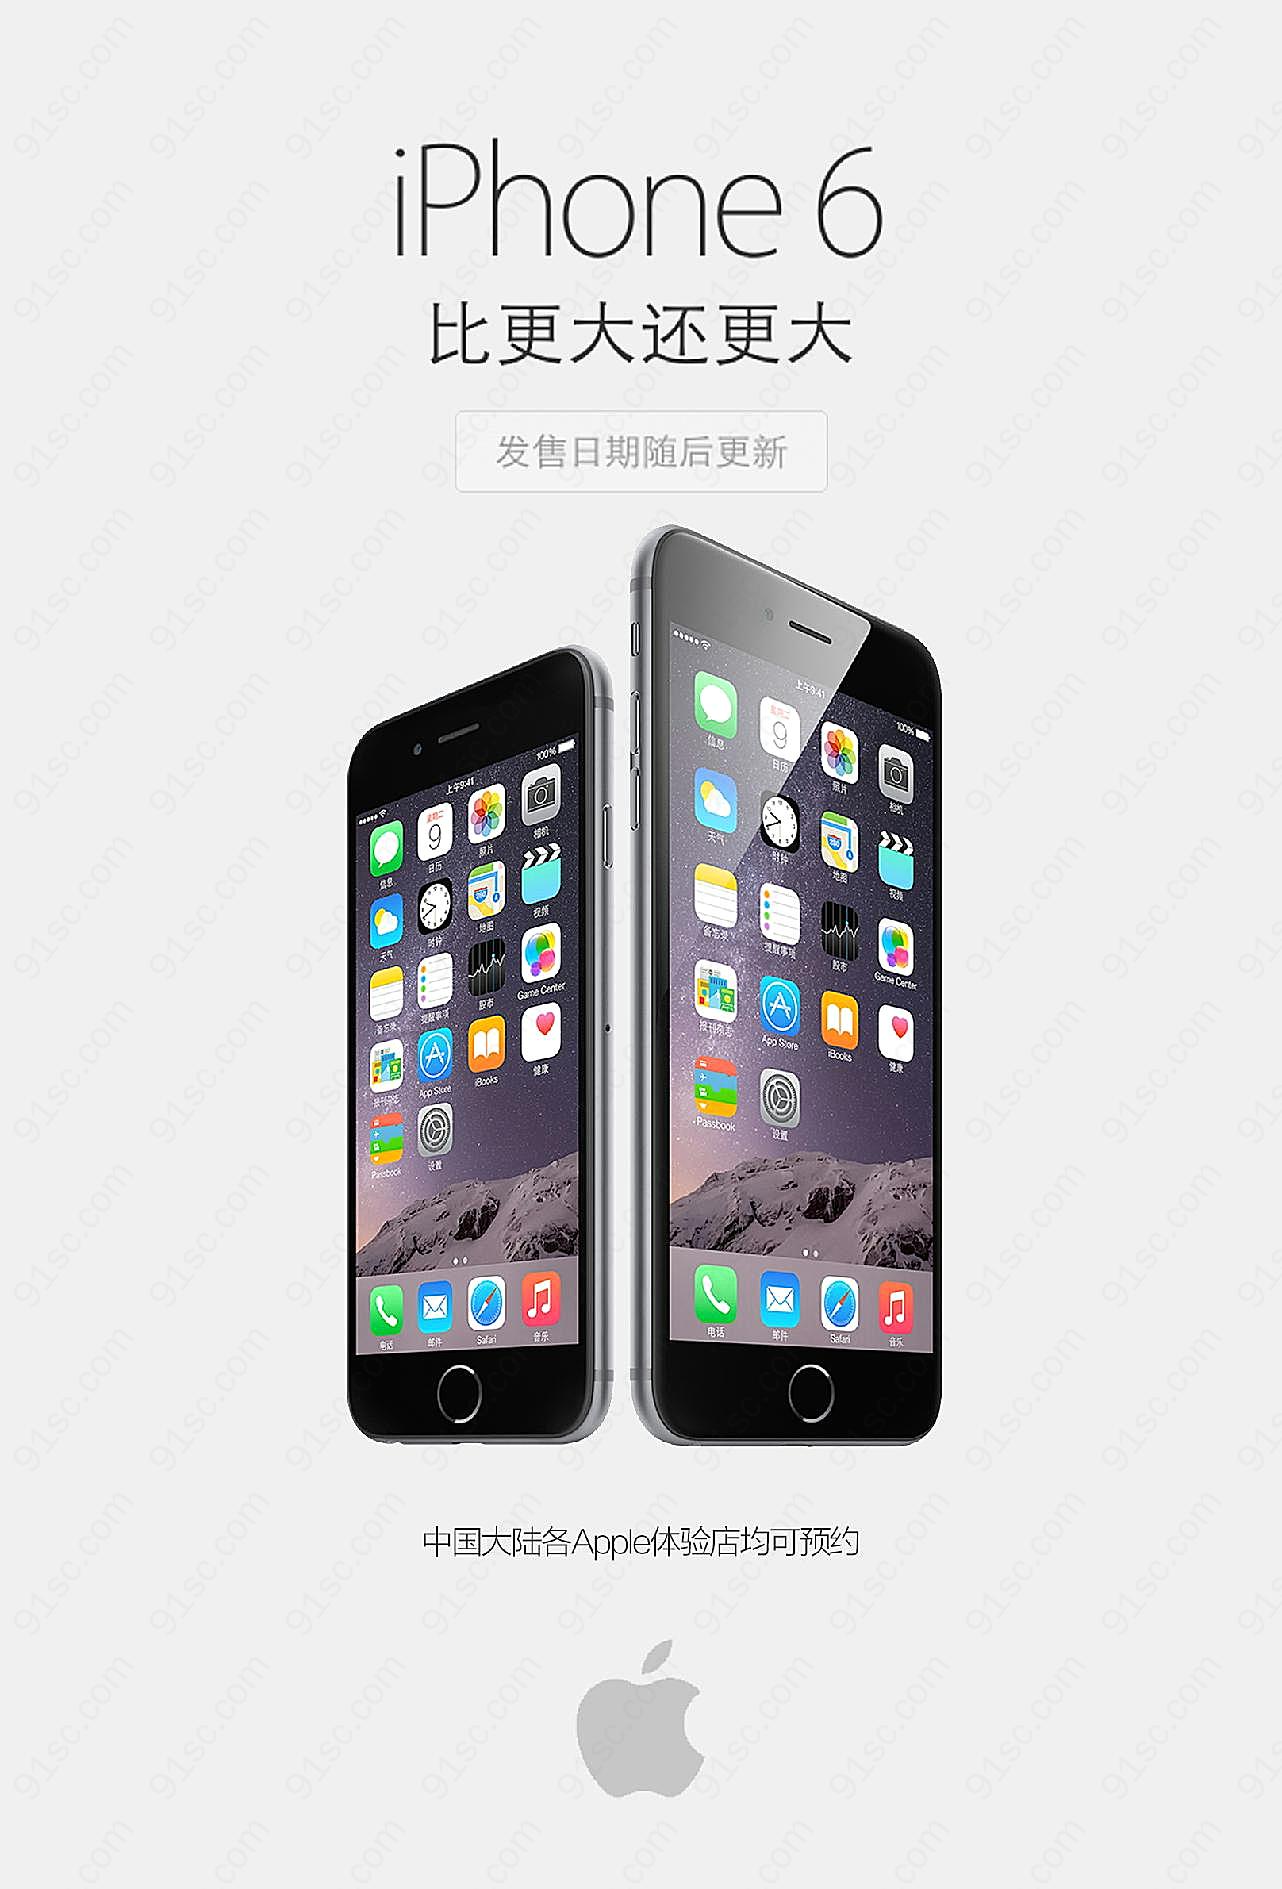 iphone6上市预约海报图片摄影